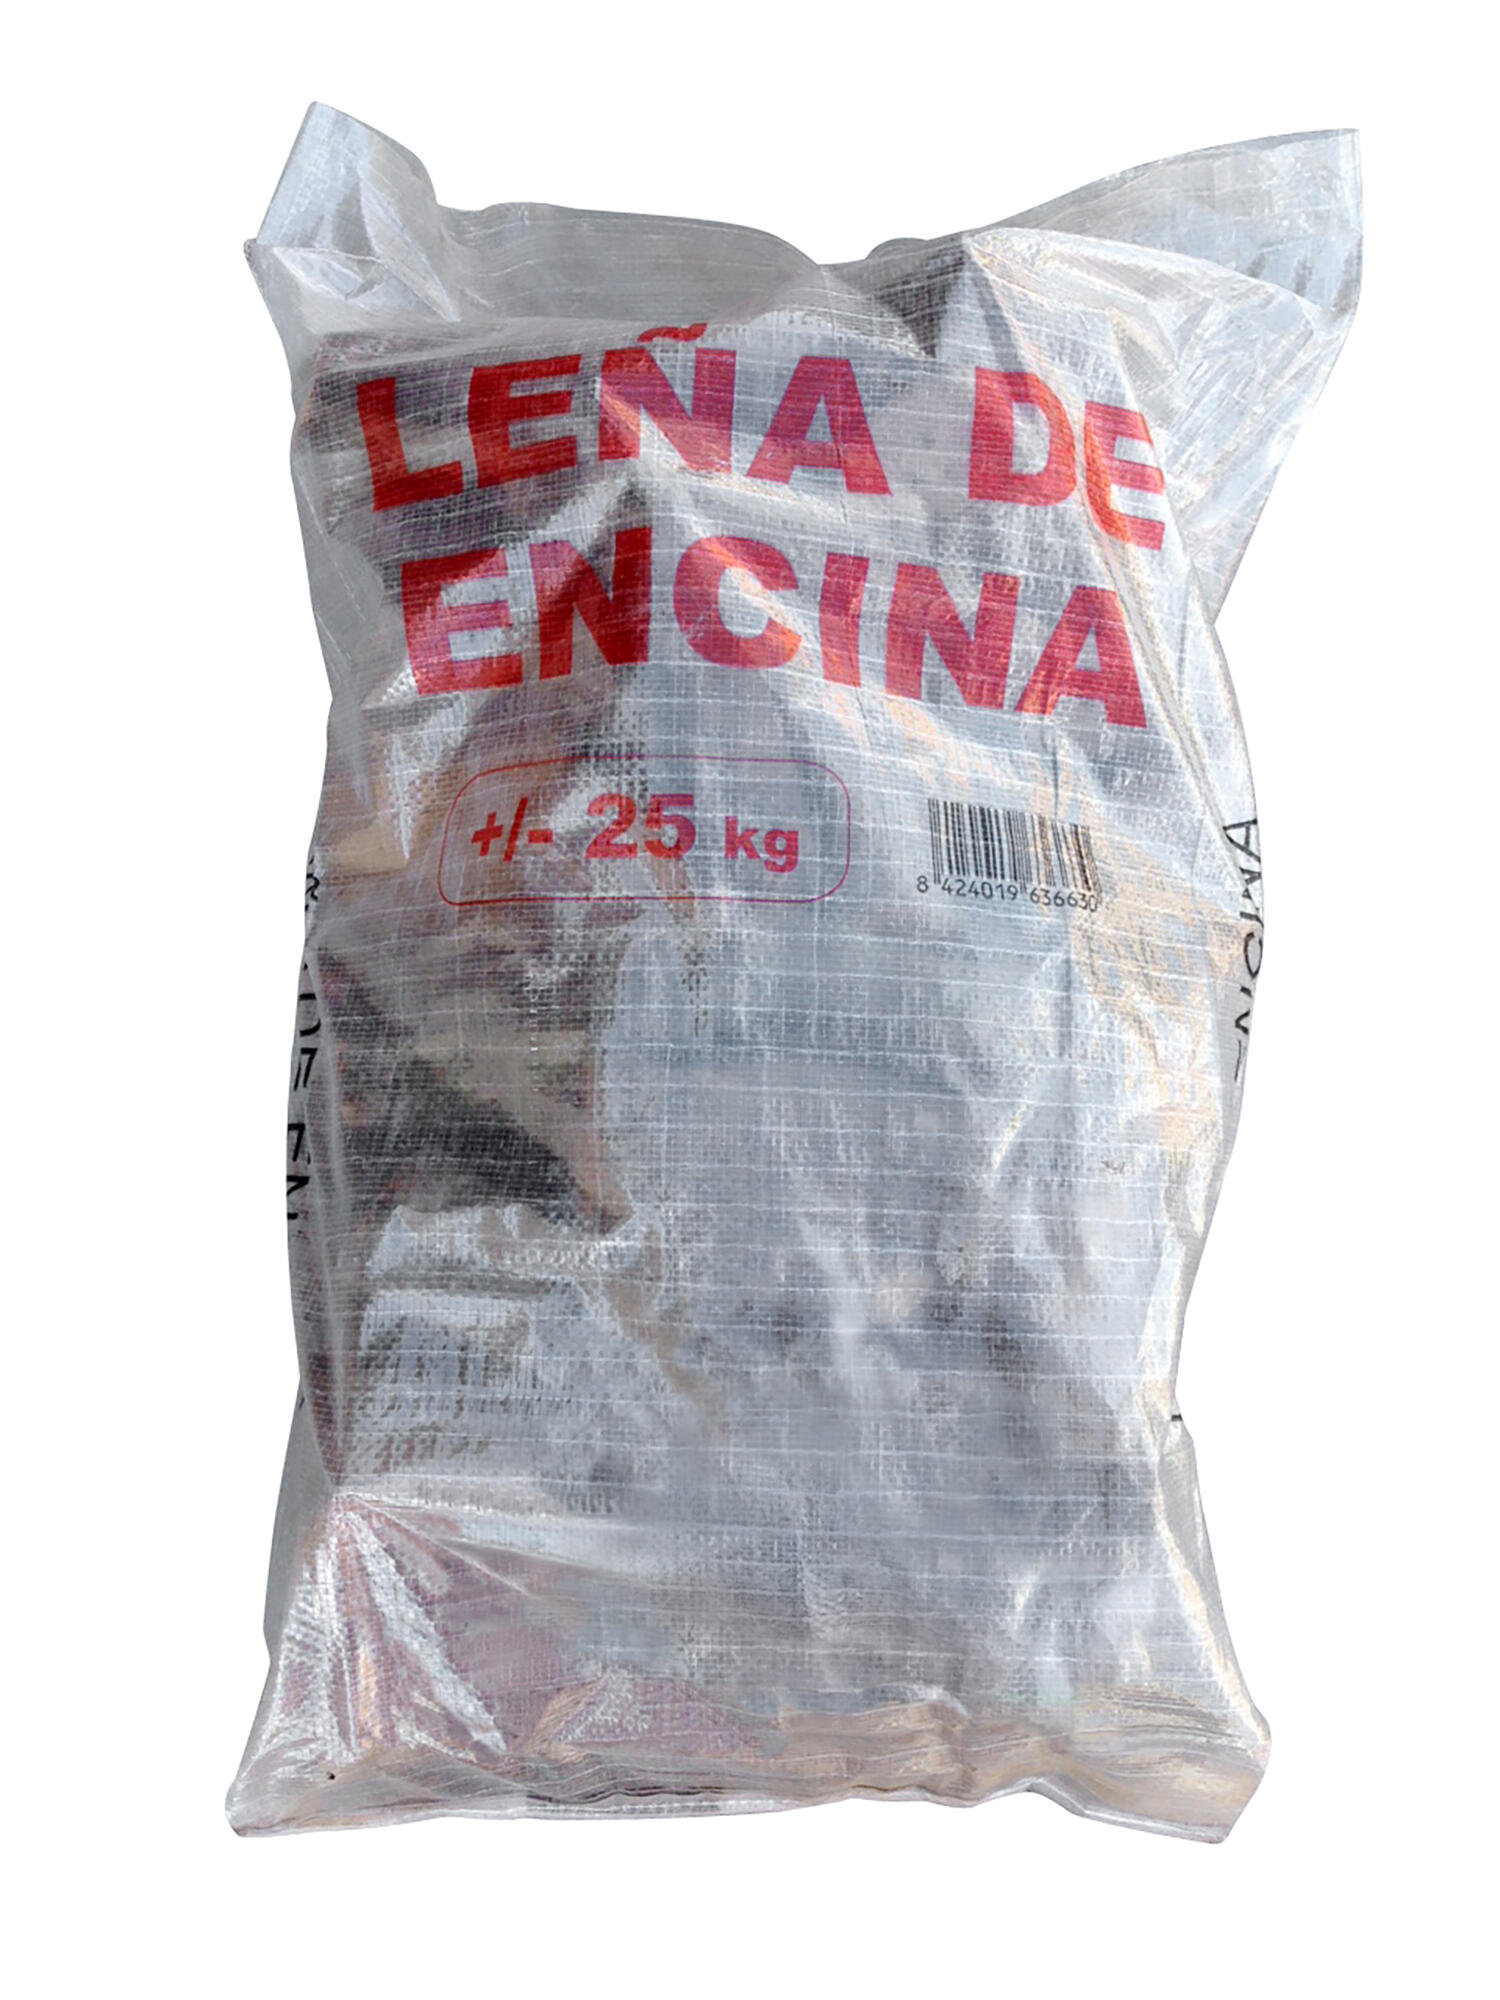 Leña Seca De Encina.. 22 Kg con Ofertas en Carrefour